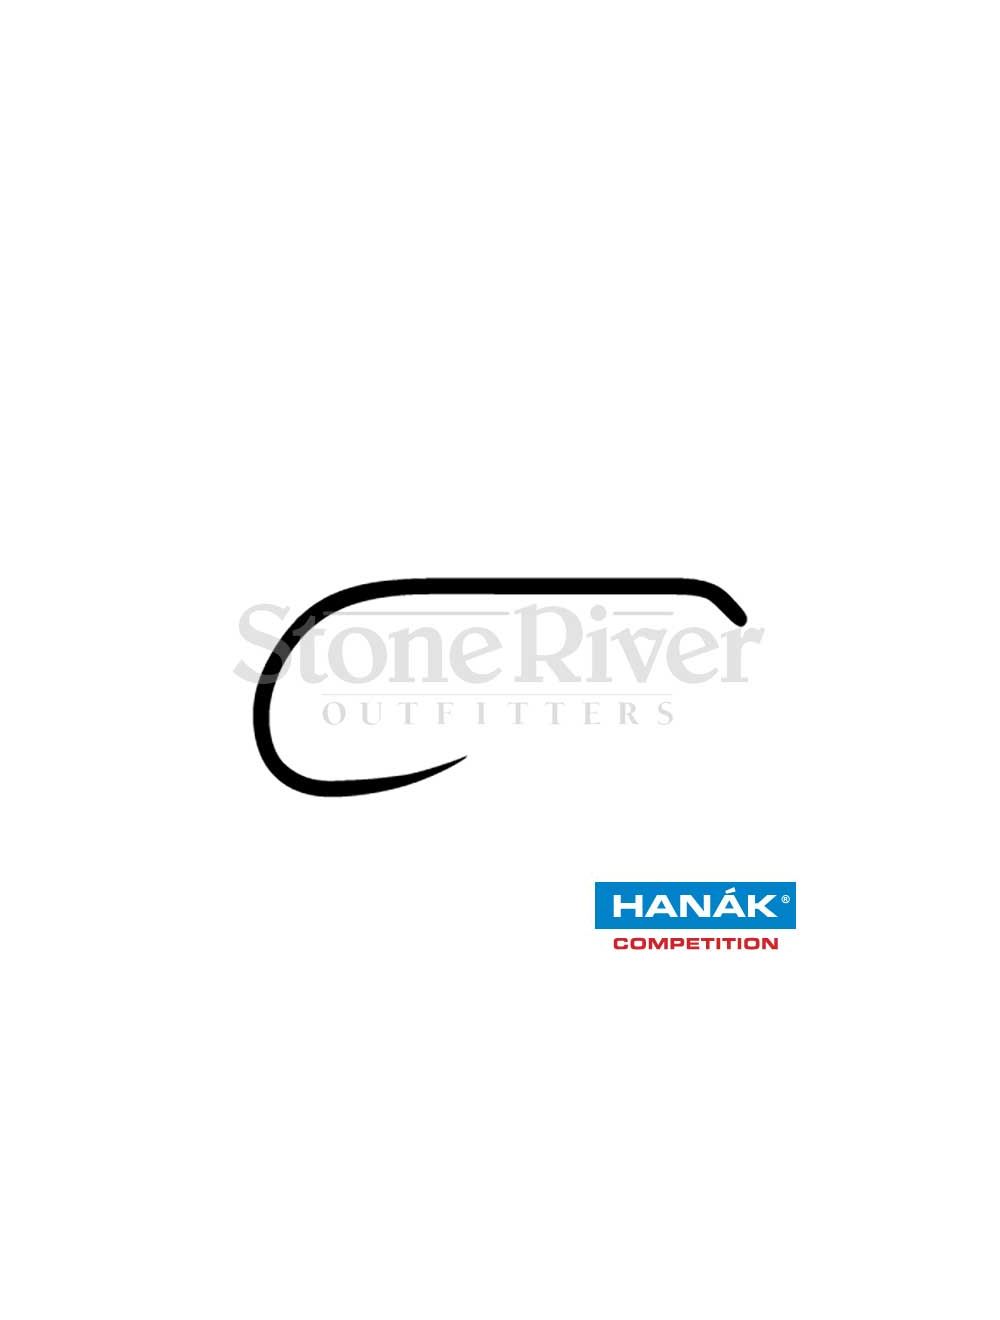 Hanak 130 BL Dry Fly Hooks (25pk)